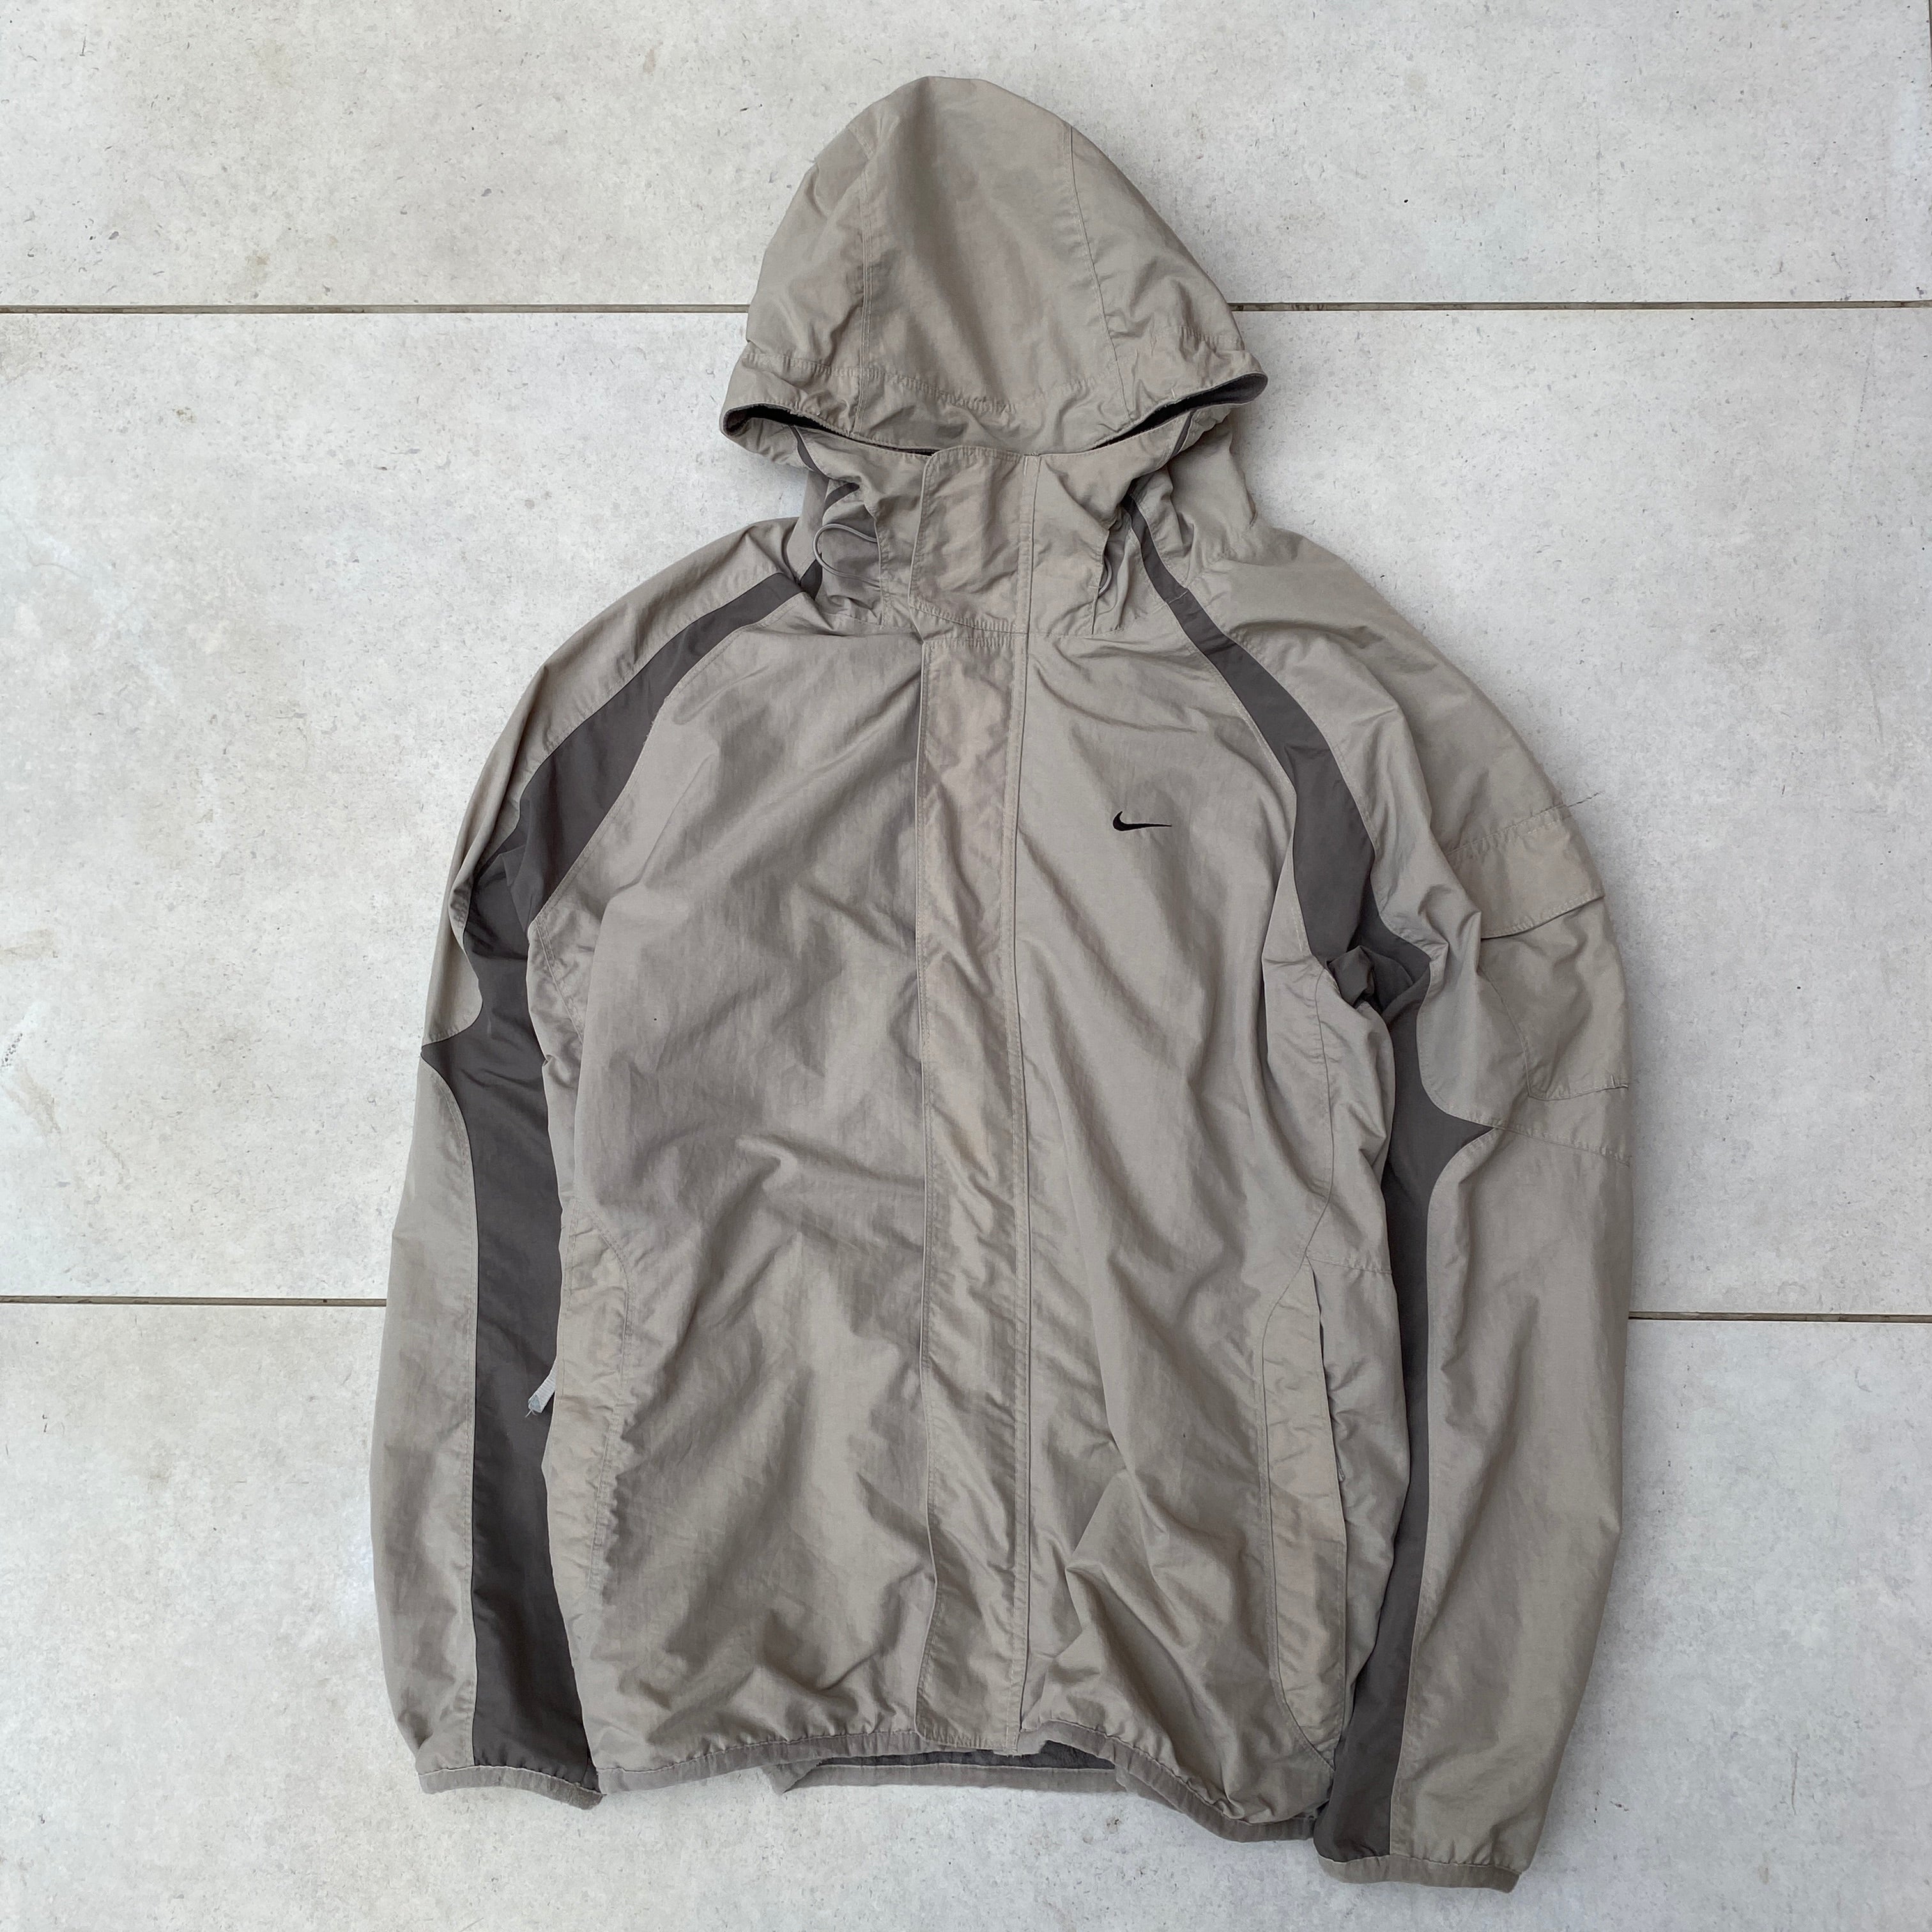 90s Nike Reversible Fleece Coat Jacket Brown XL